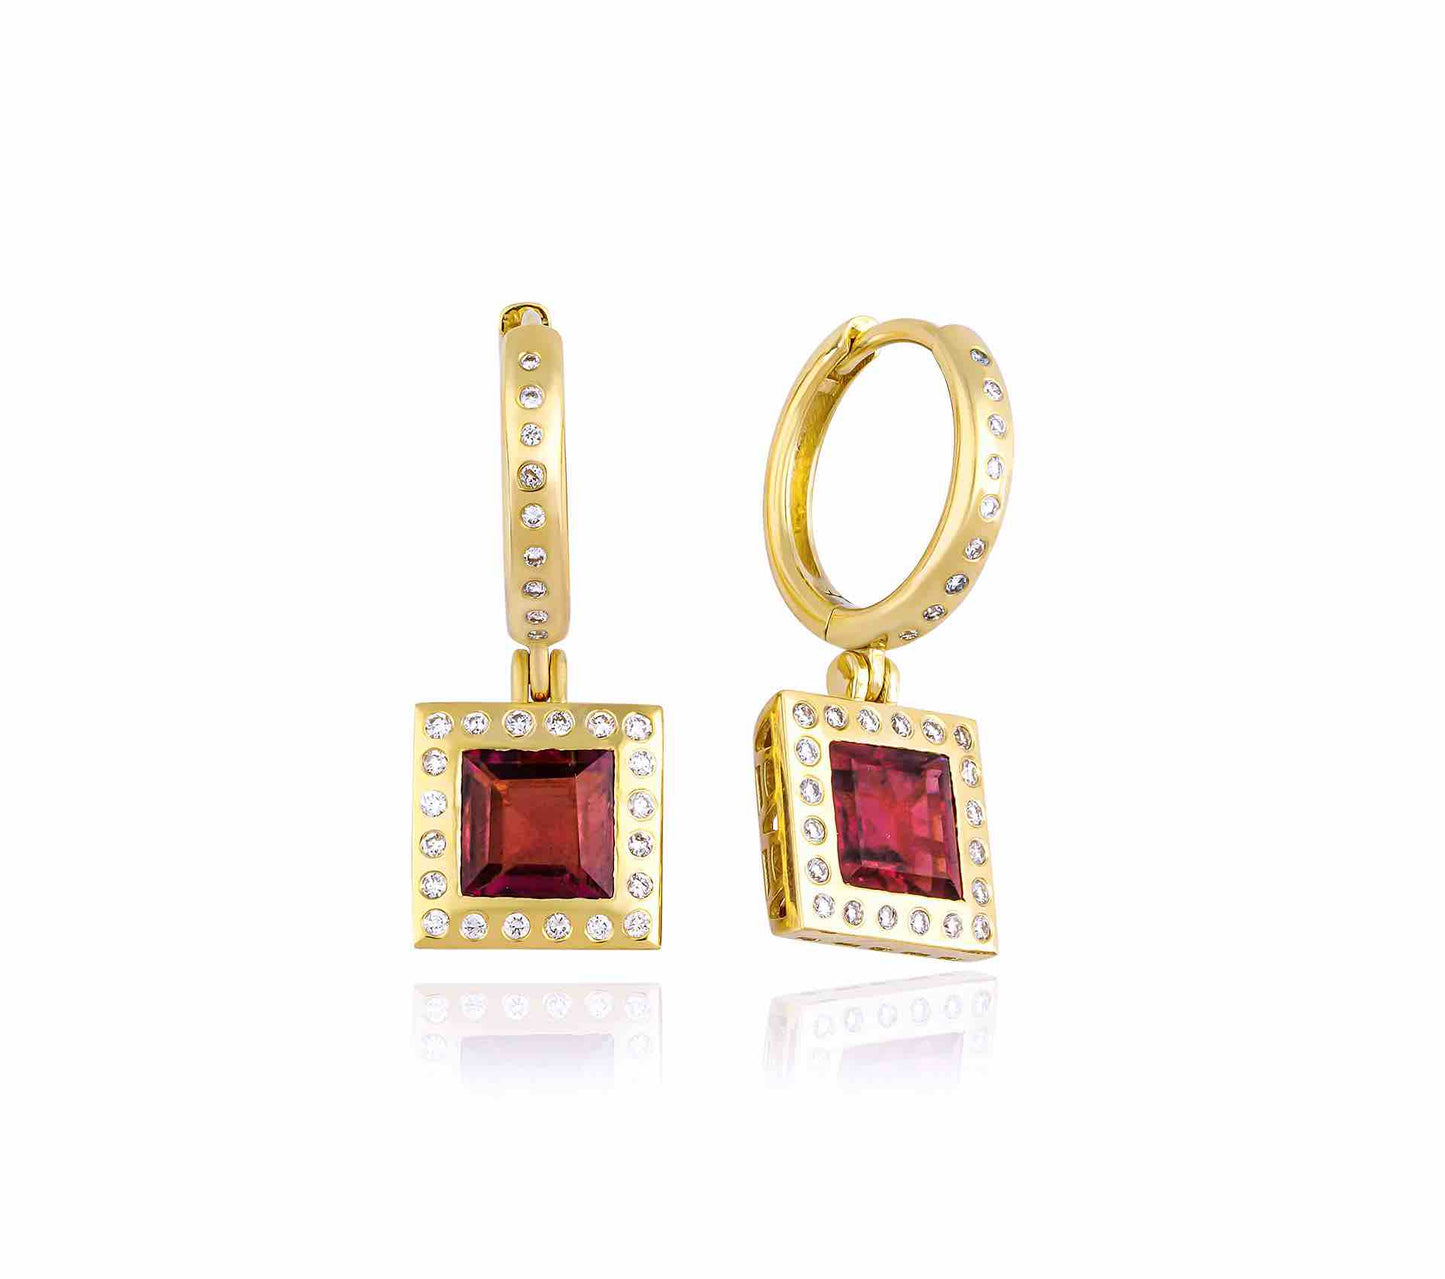 Ivy, Gold Earrings, Diamond Earrings, 14K Gold Earrings, Gold Jewelry, Tourmaline Earrings, Gemstone Earrings